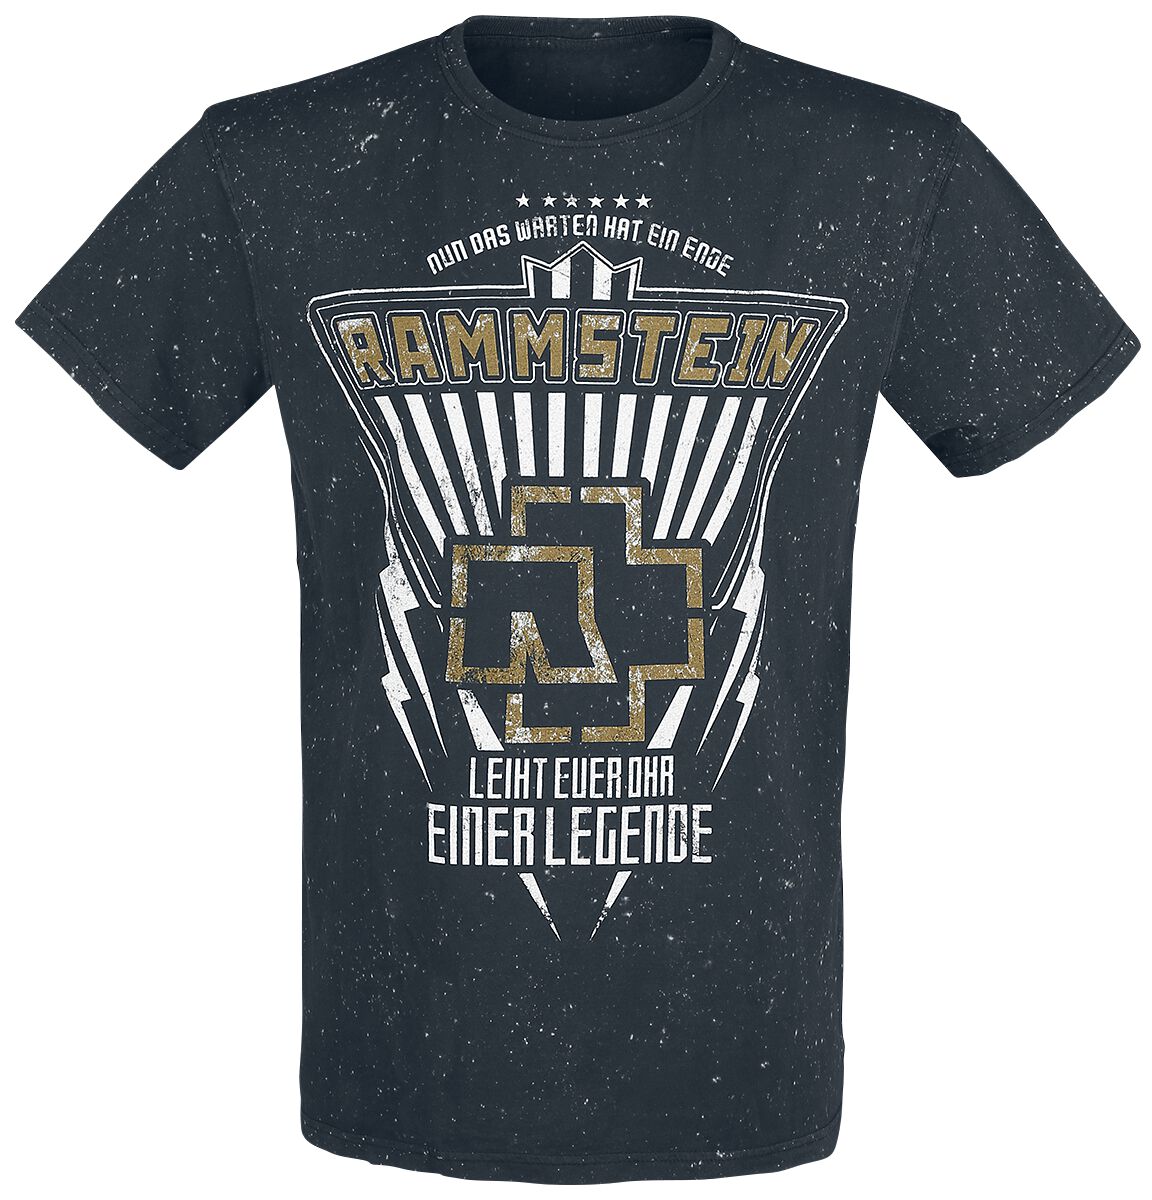 Rammstein T-Shirt - Legende - S bis 4XL - für Männer - Größe L - schwarz  - Lizenziertes Merchandise!